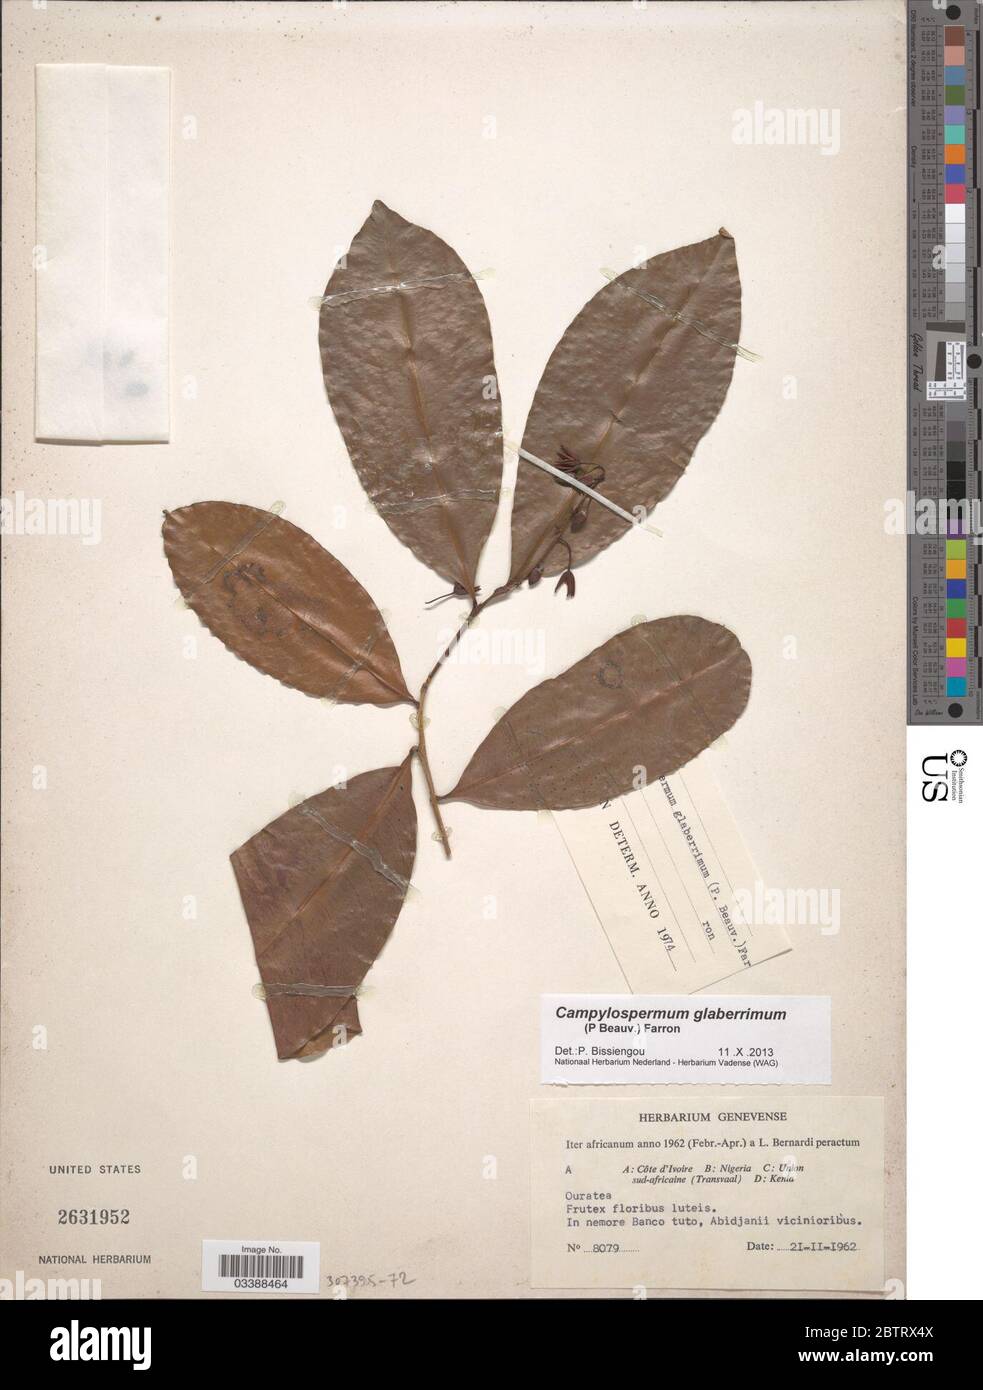 Campylospermum glaberrimum P Beauv Farron. Stock Photo